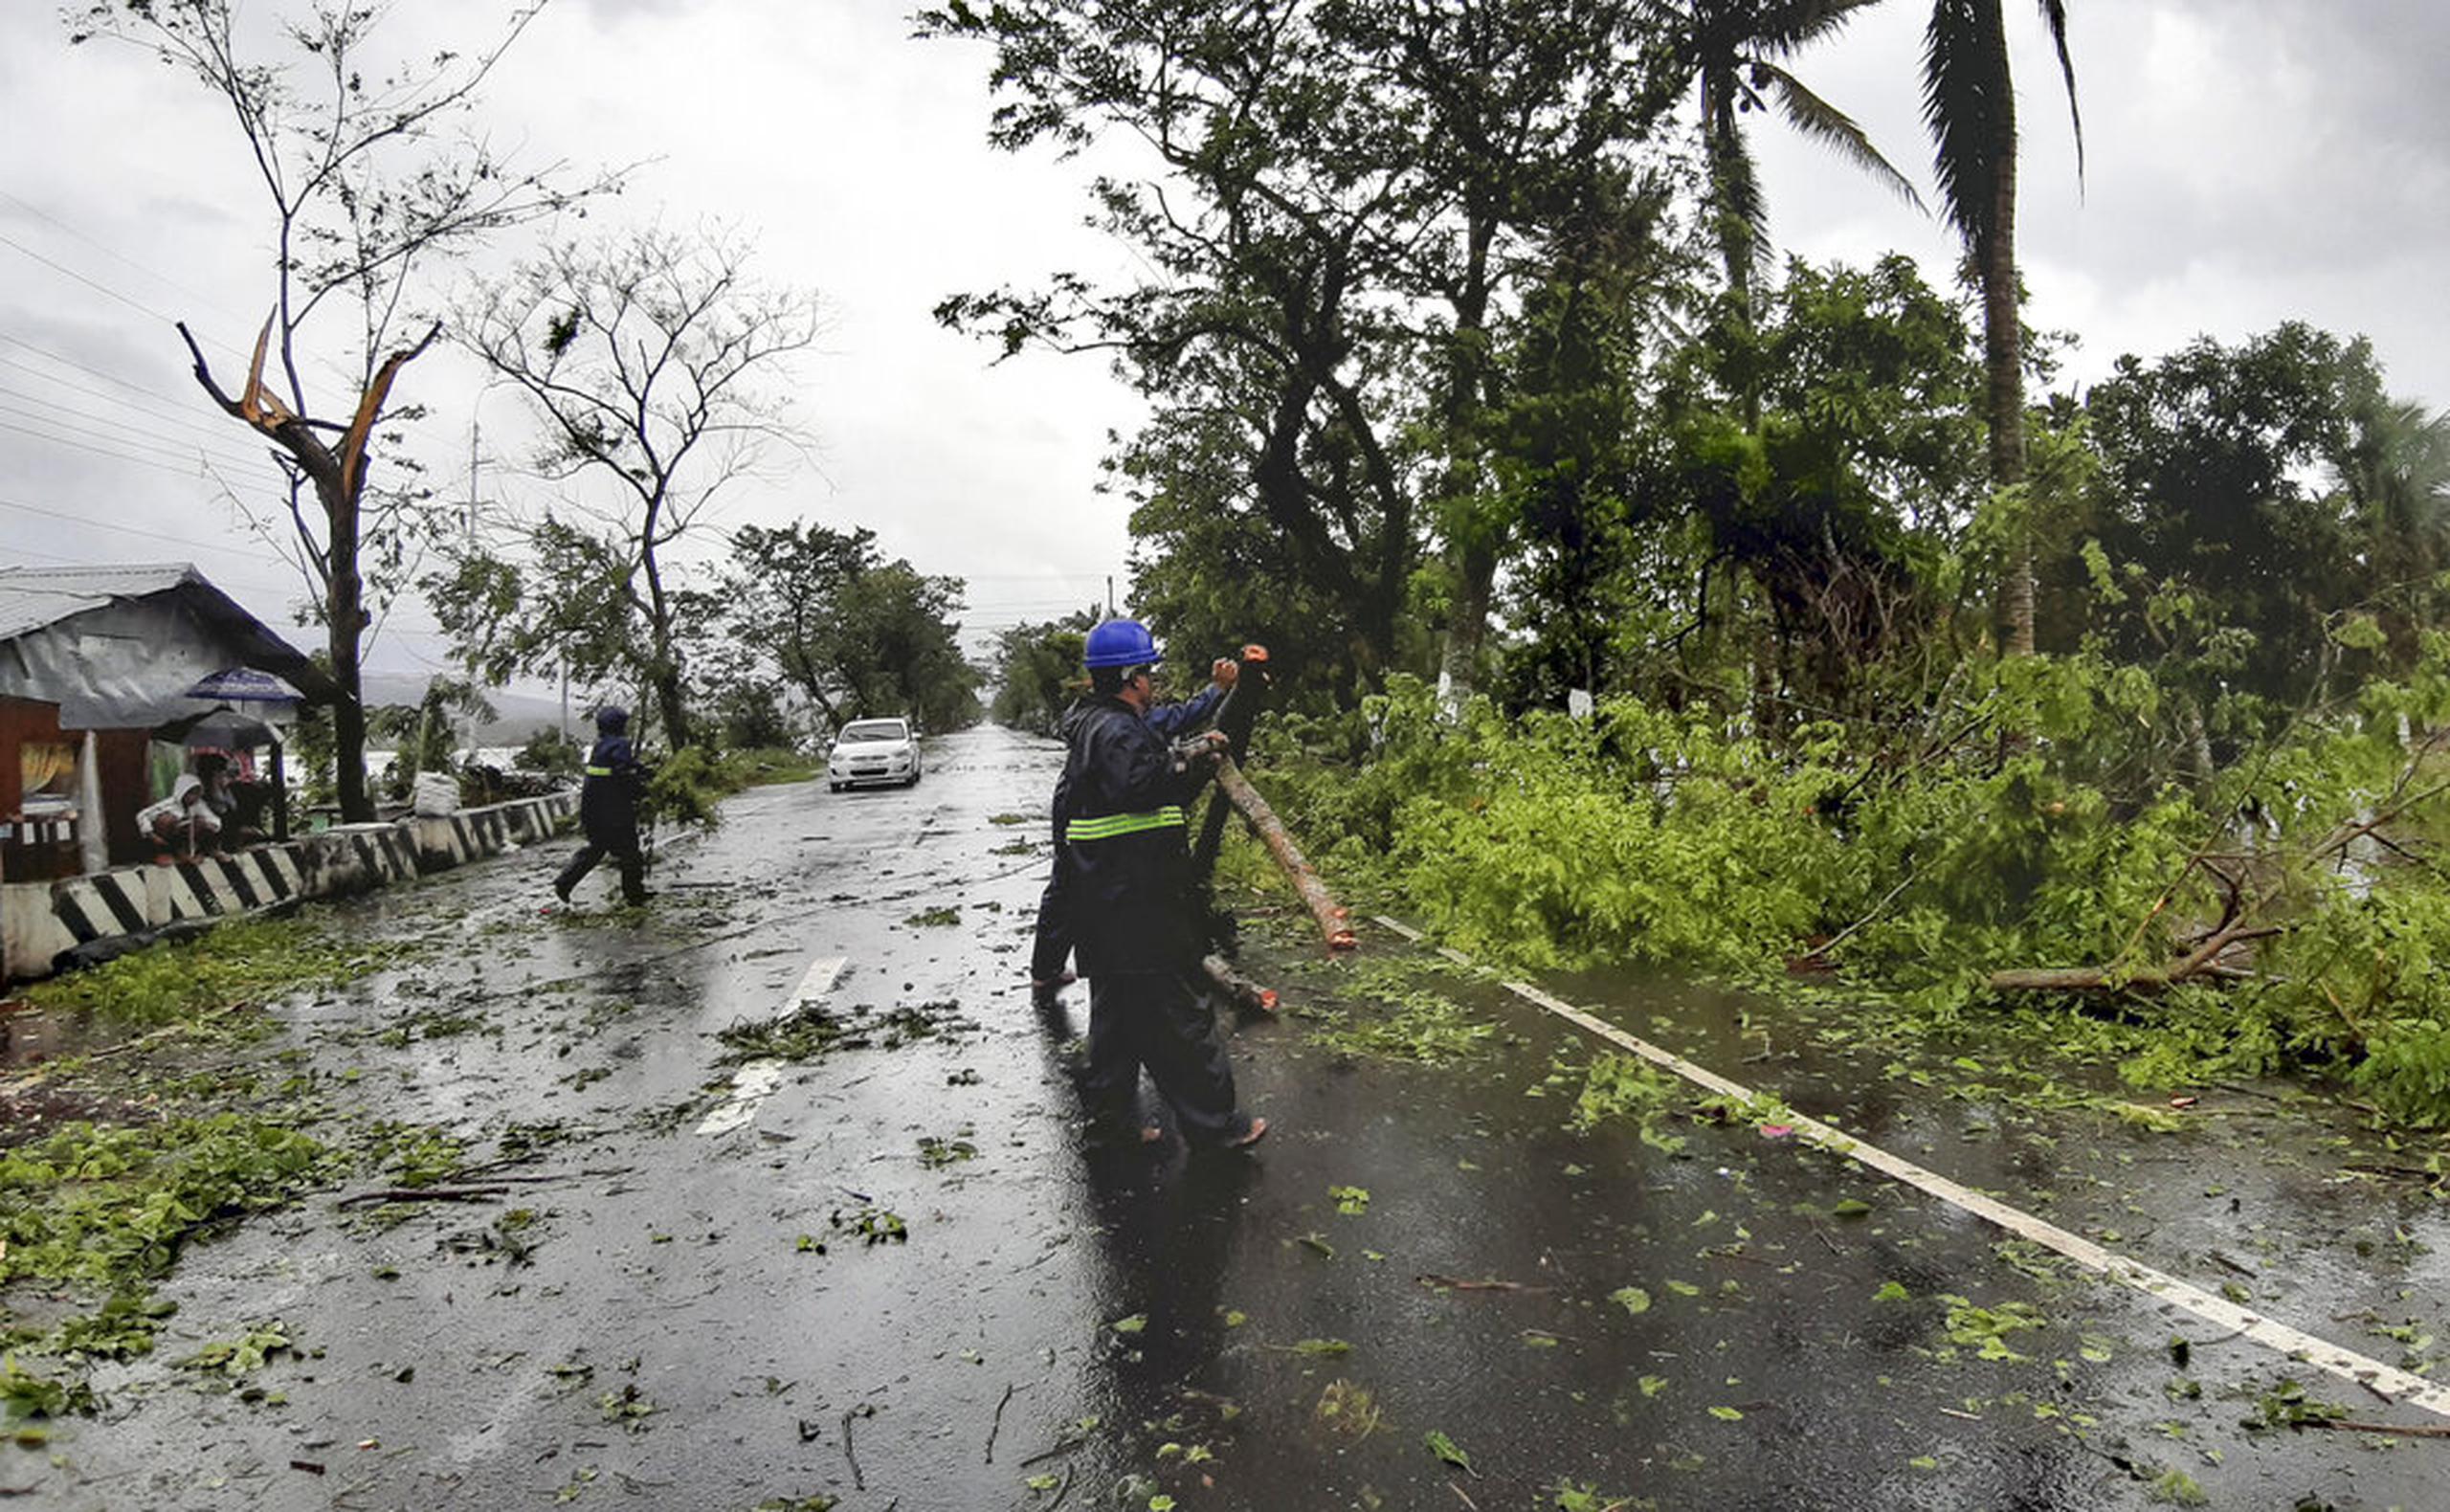 Trabajadores limpiaron un camino de árboles y ramas derribados por los fuertes vientos del tifón Vongfong en provincia de Sorsogon, al este de Filipinas.